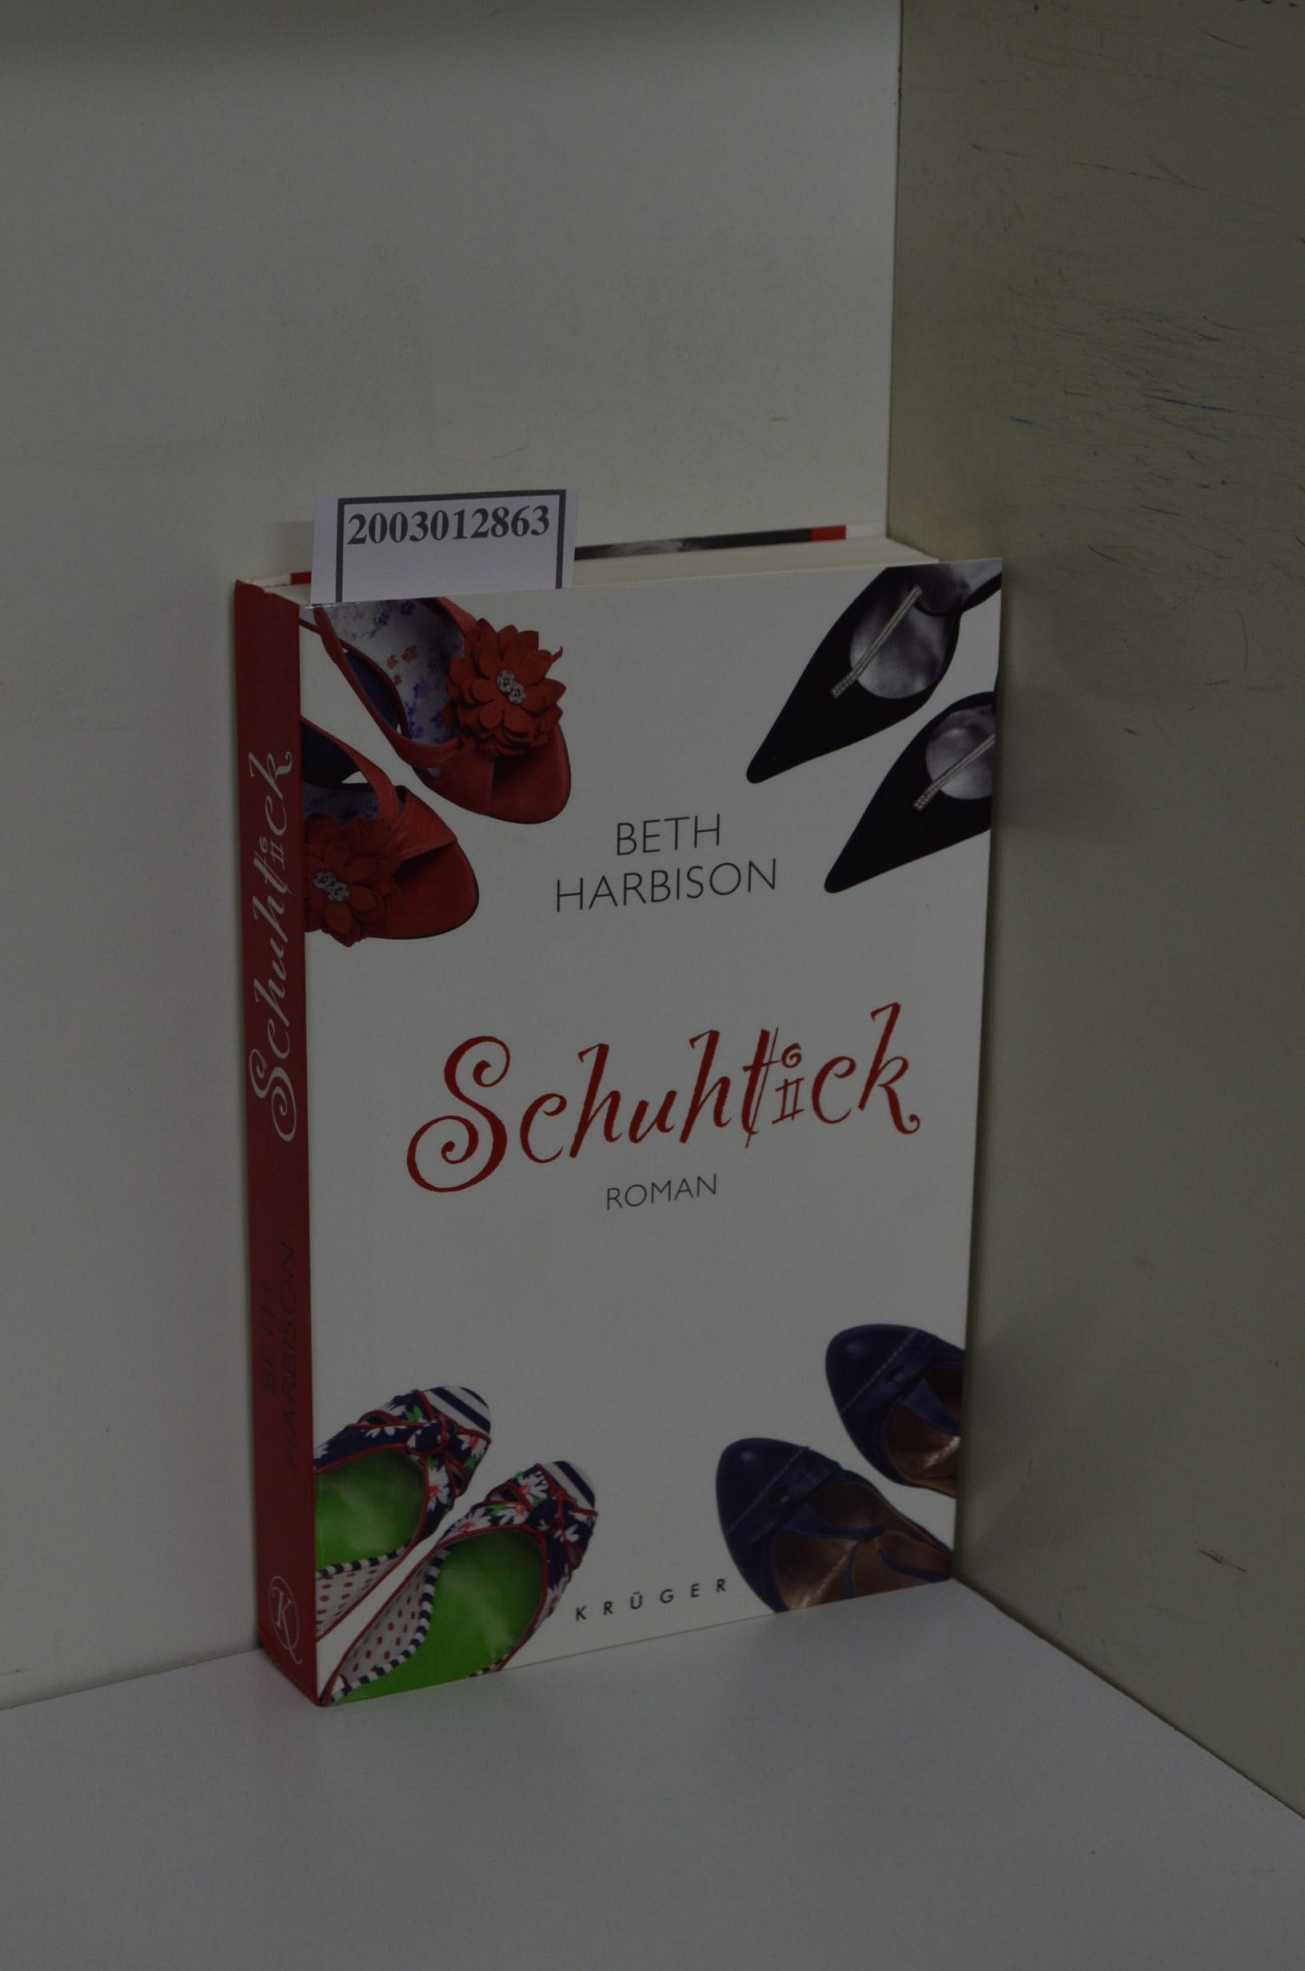 Schuhtick - Harbison, Beth